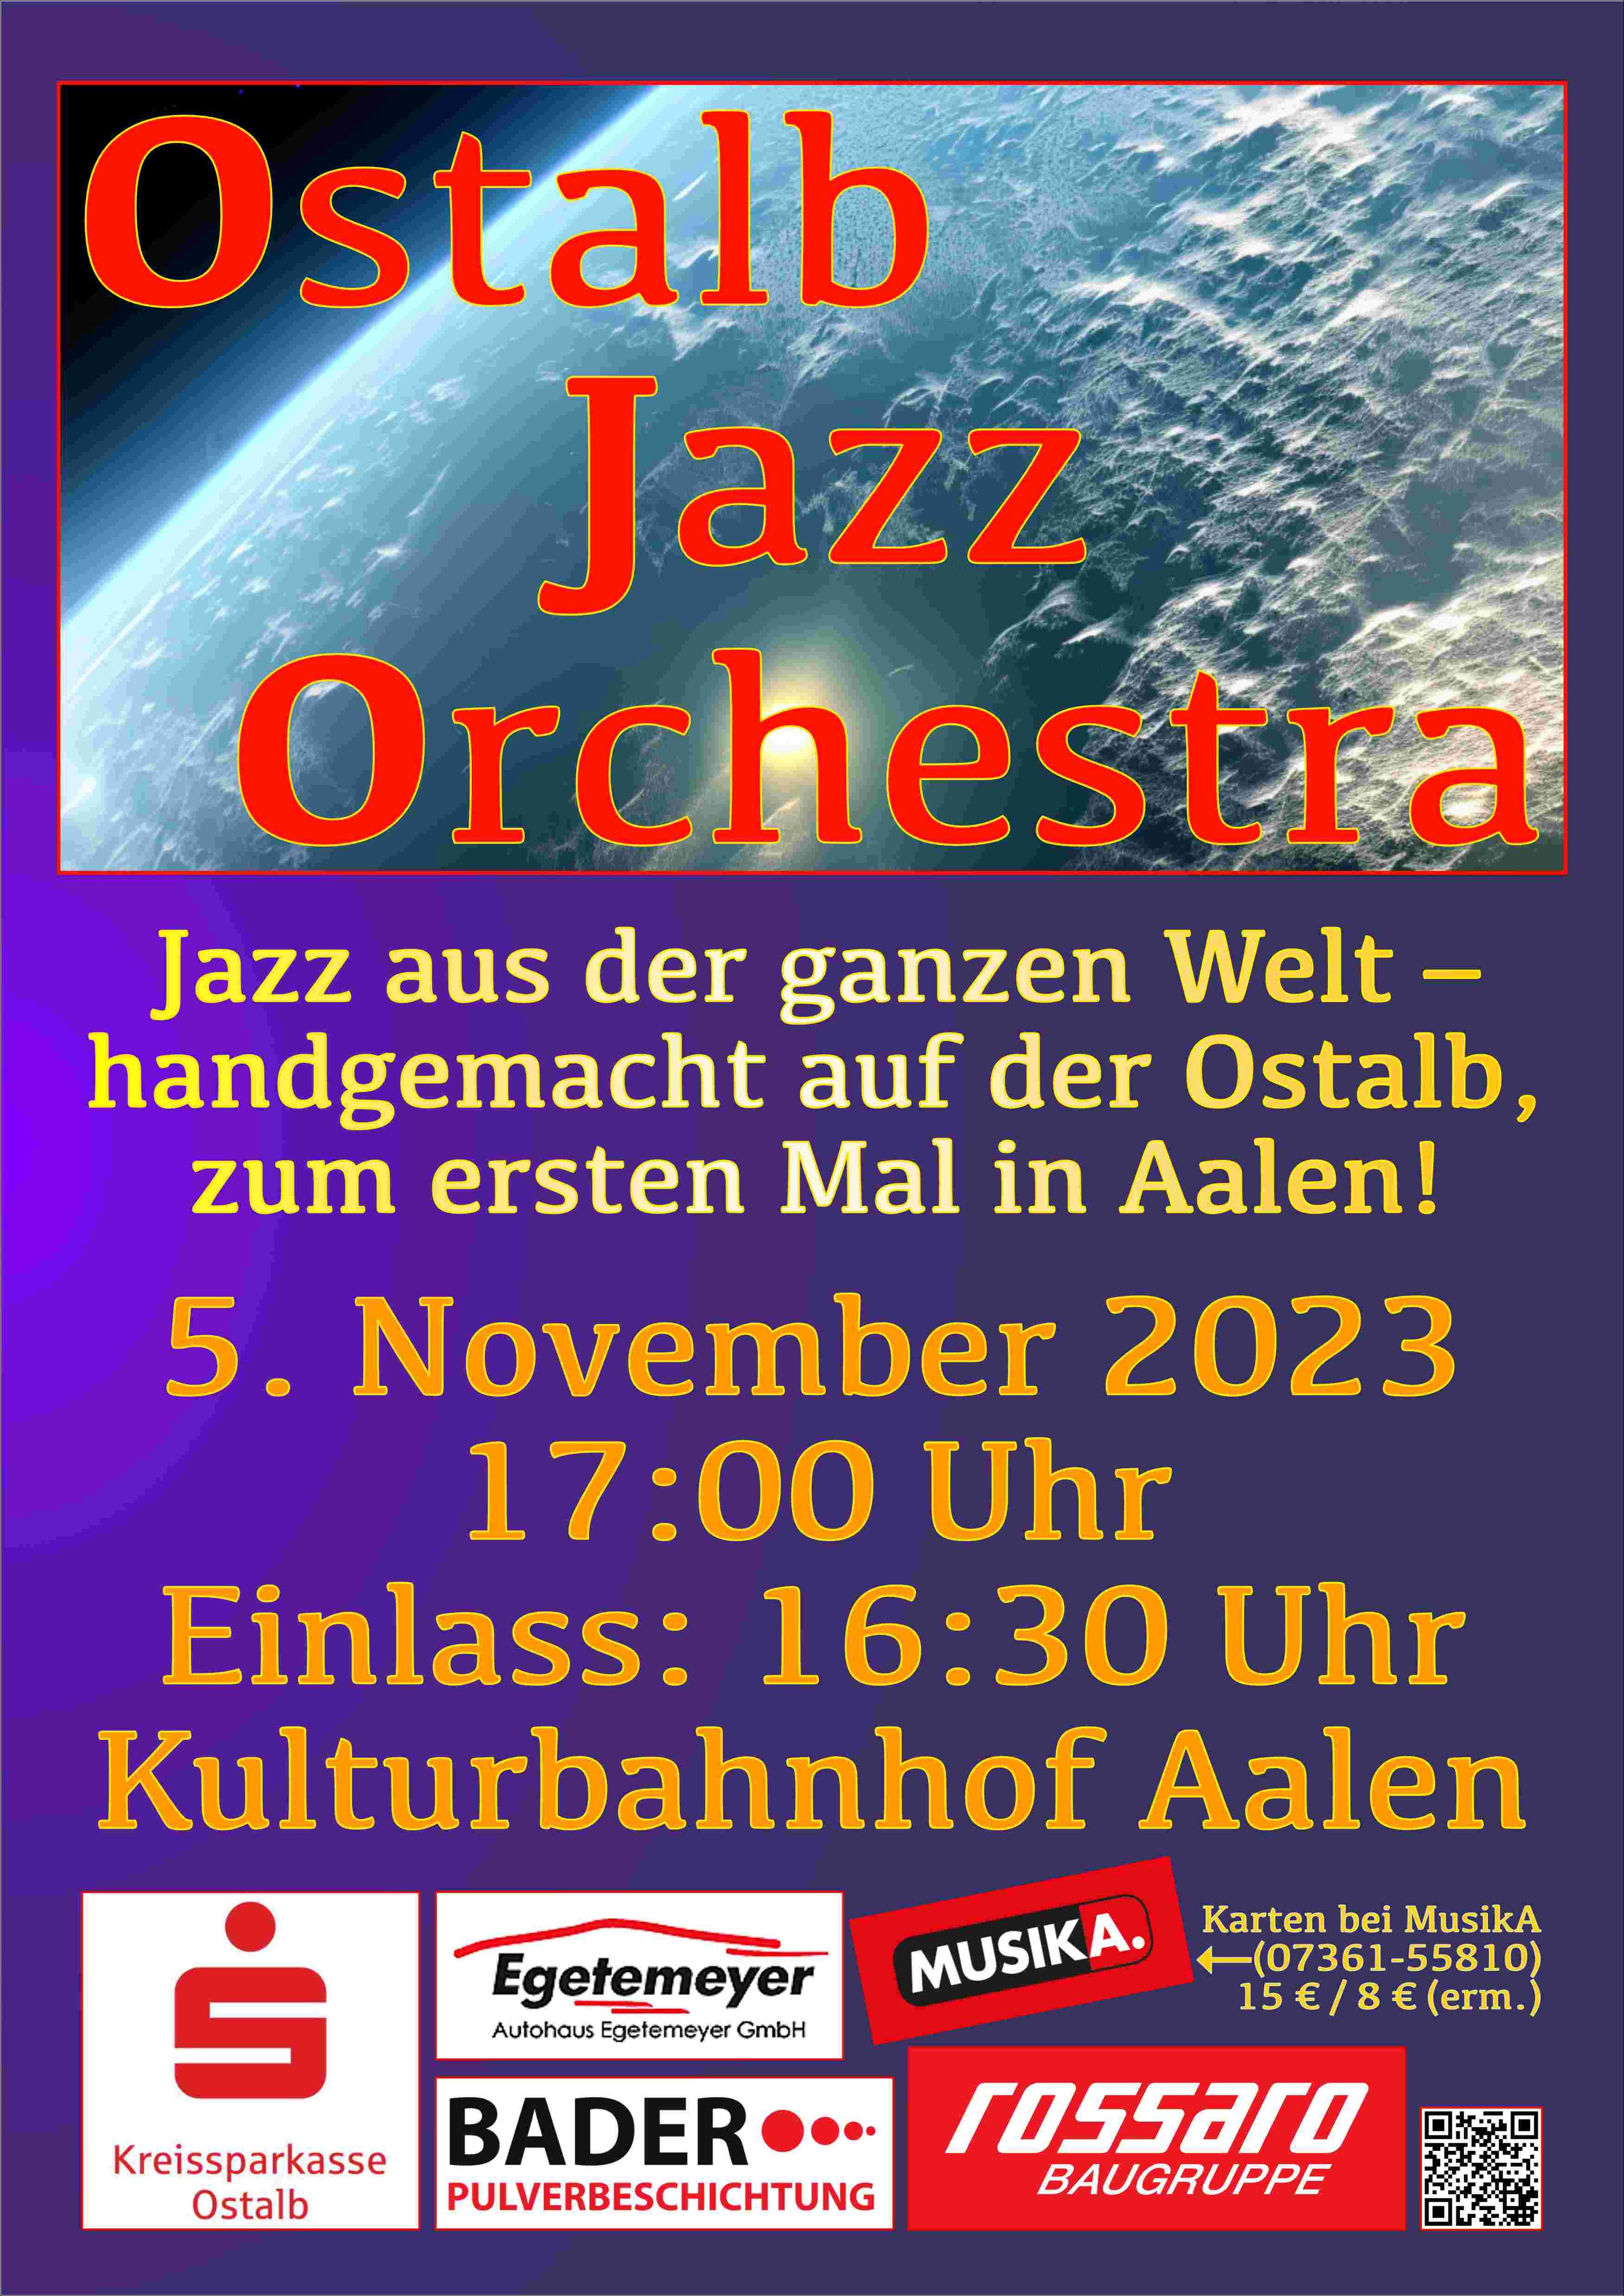 Poster für das Konzert am 5. November 2023